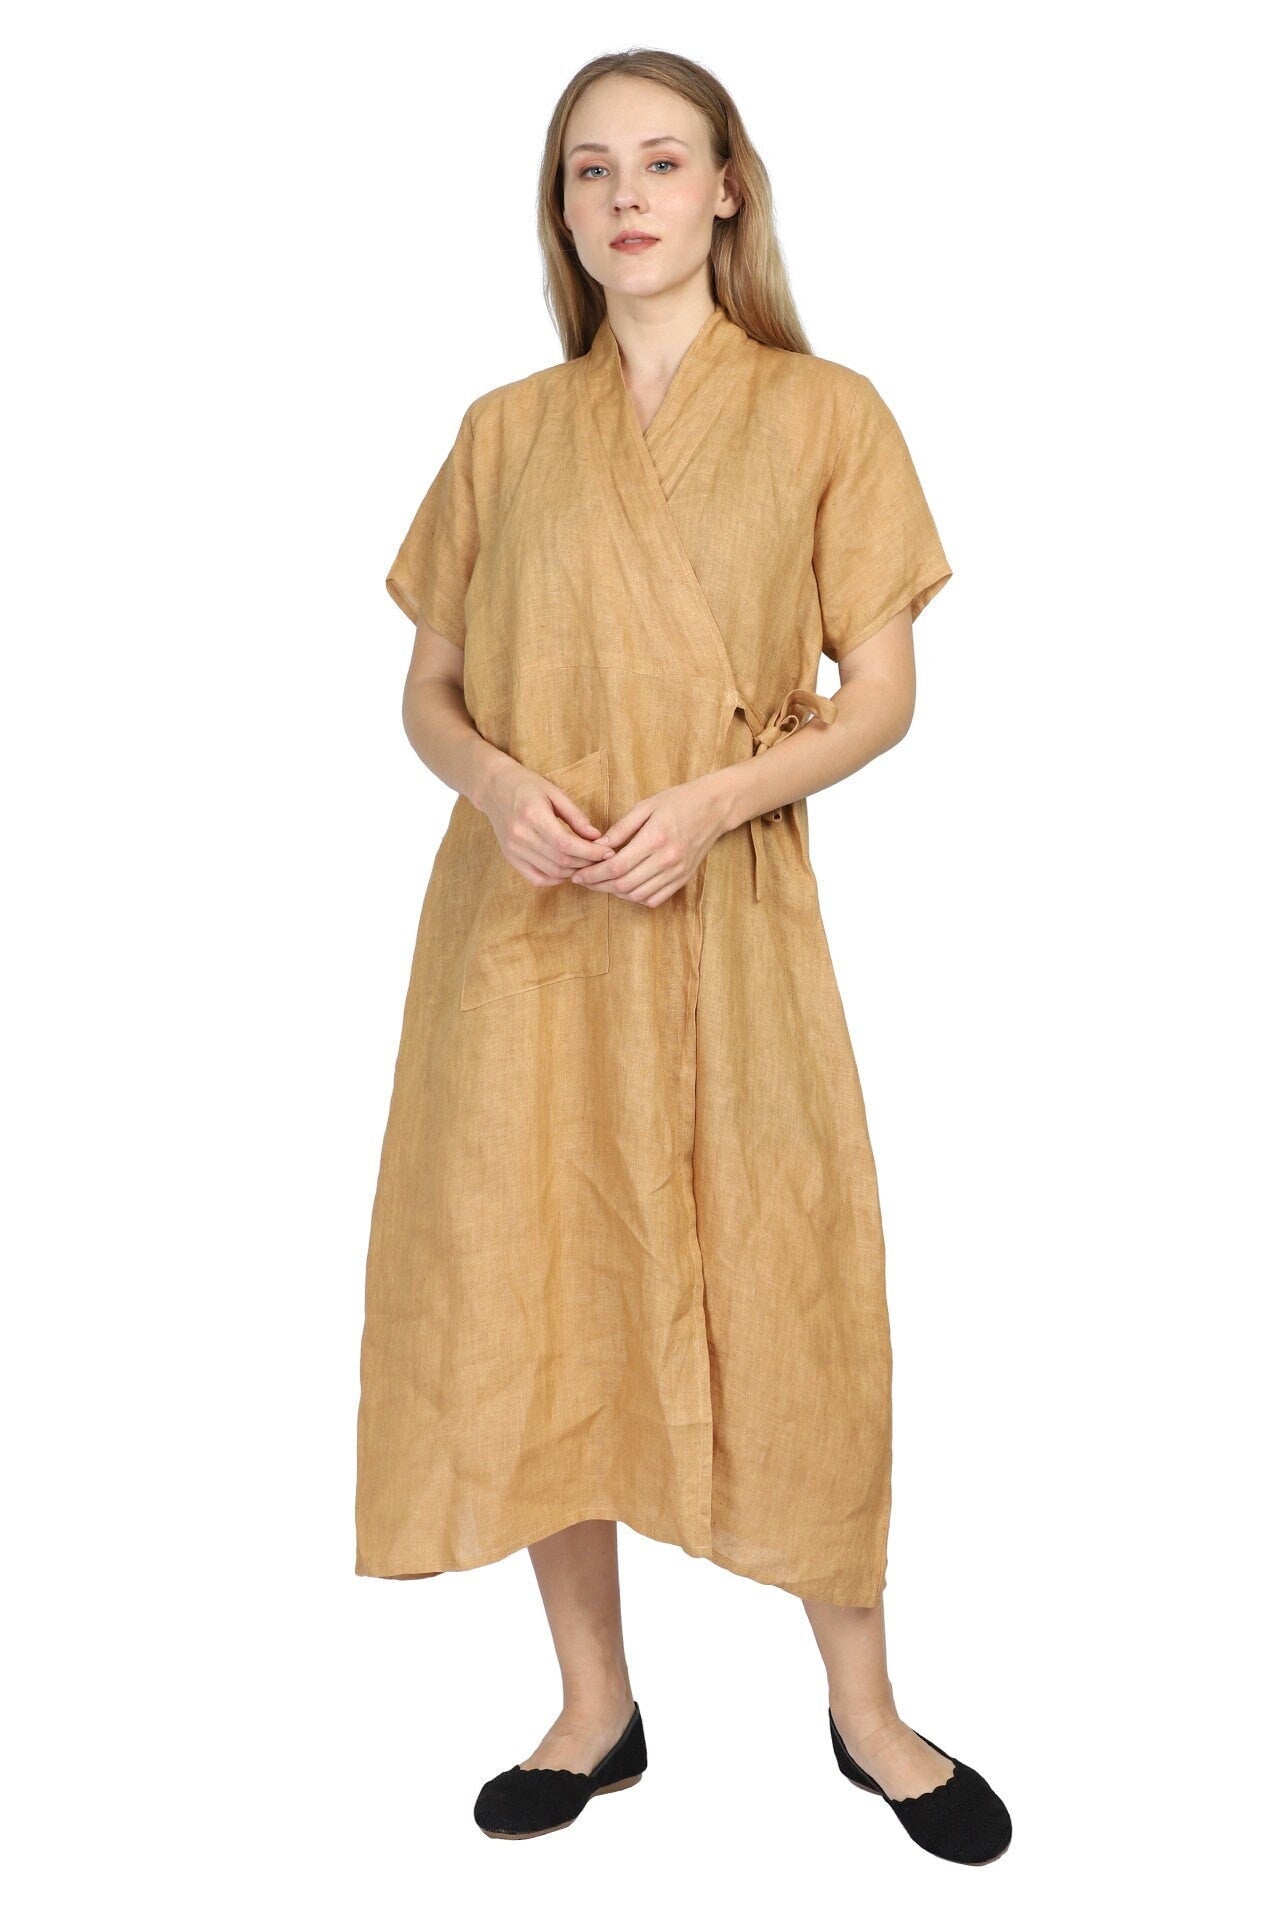 Meditation/Prayer Kaftan, Meditation Robe, Linen Robe, Linen Kaftan, Linen Dress (Handstitched, Linen)  - Free Size